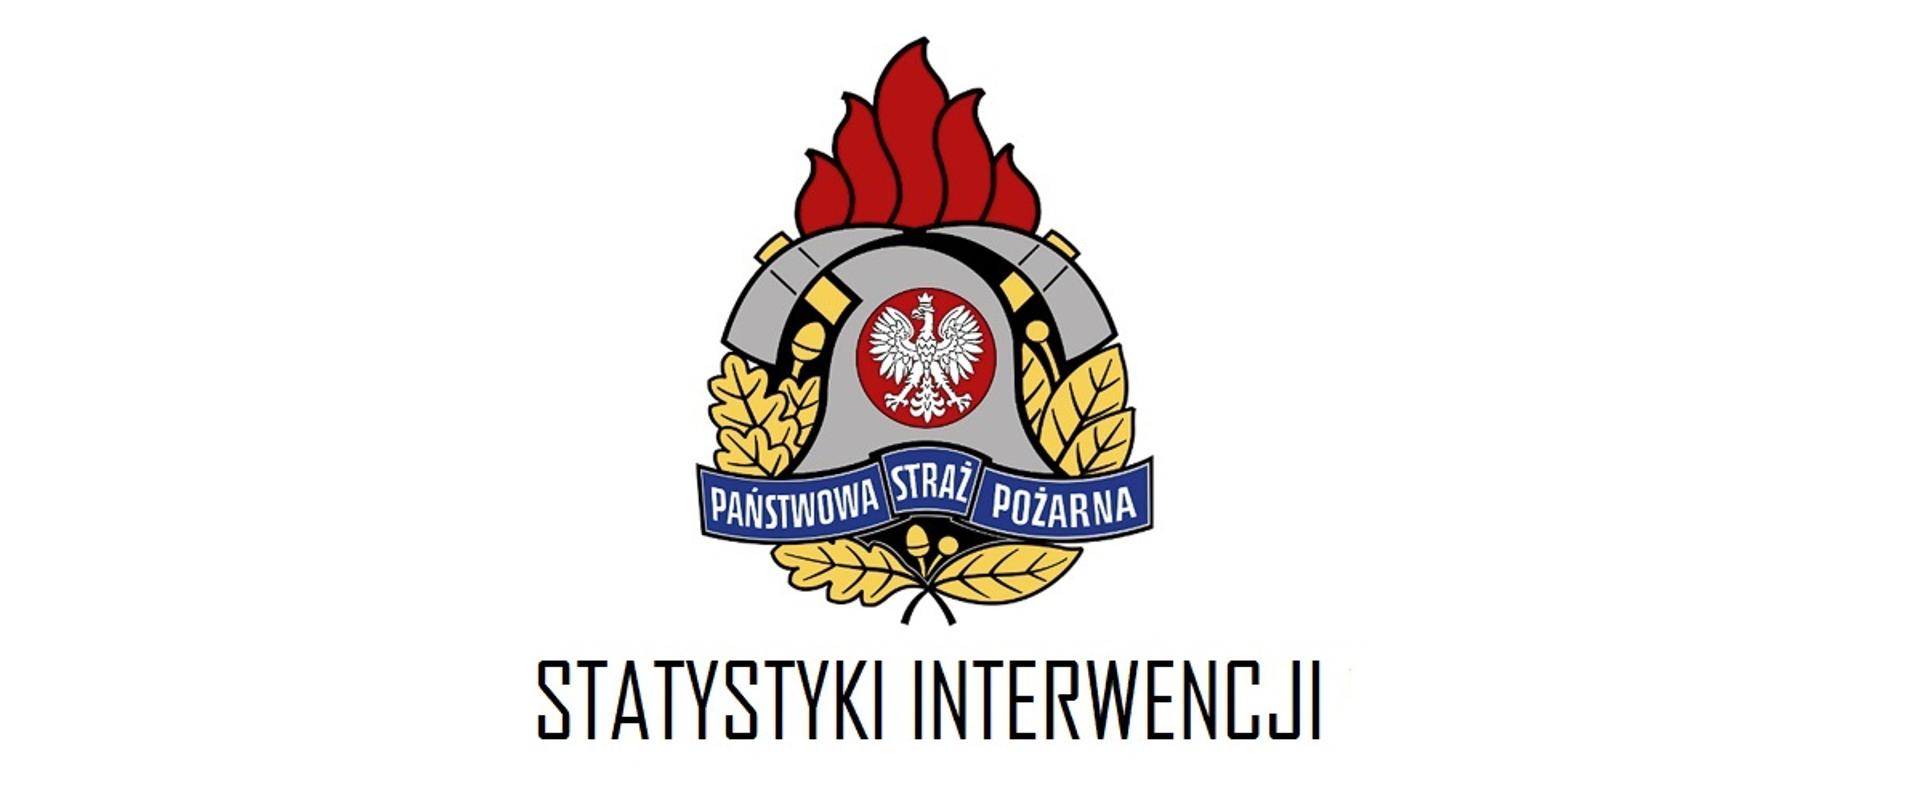  Logo Państwowej Straży Pożarnej oraz napis: Statystyki interwencji 